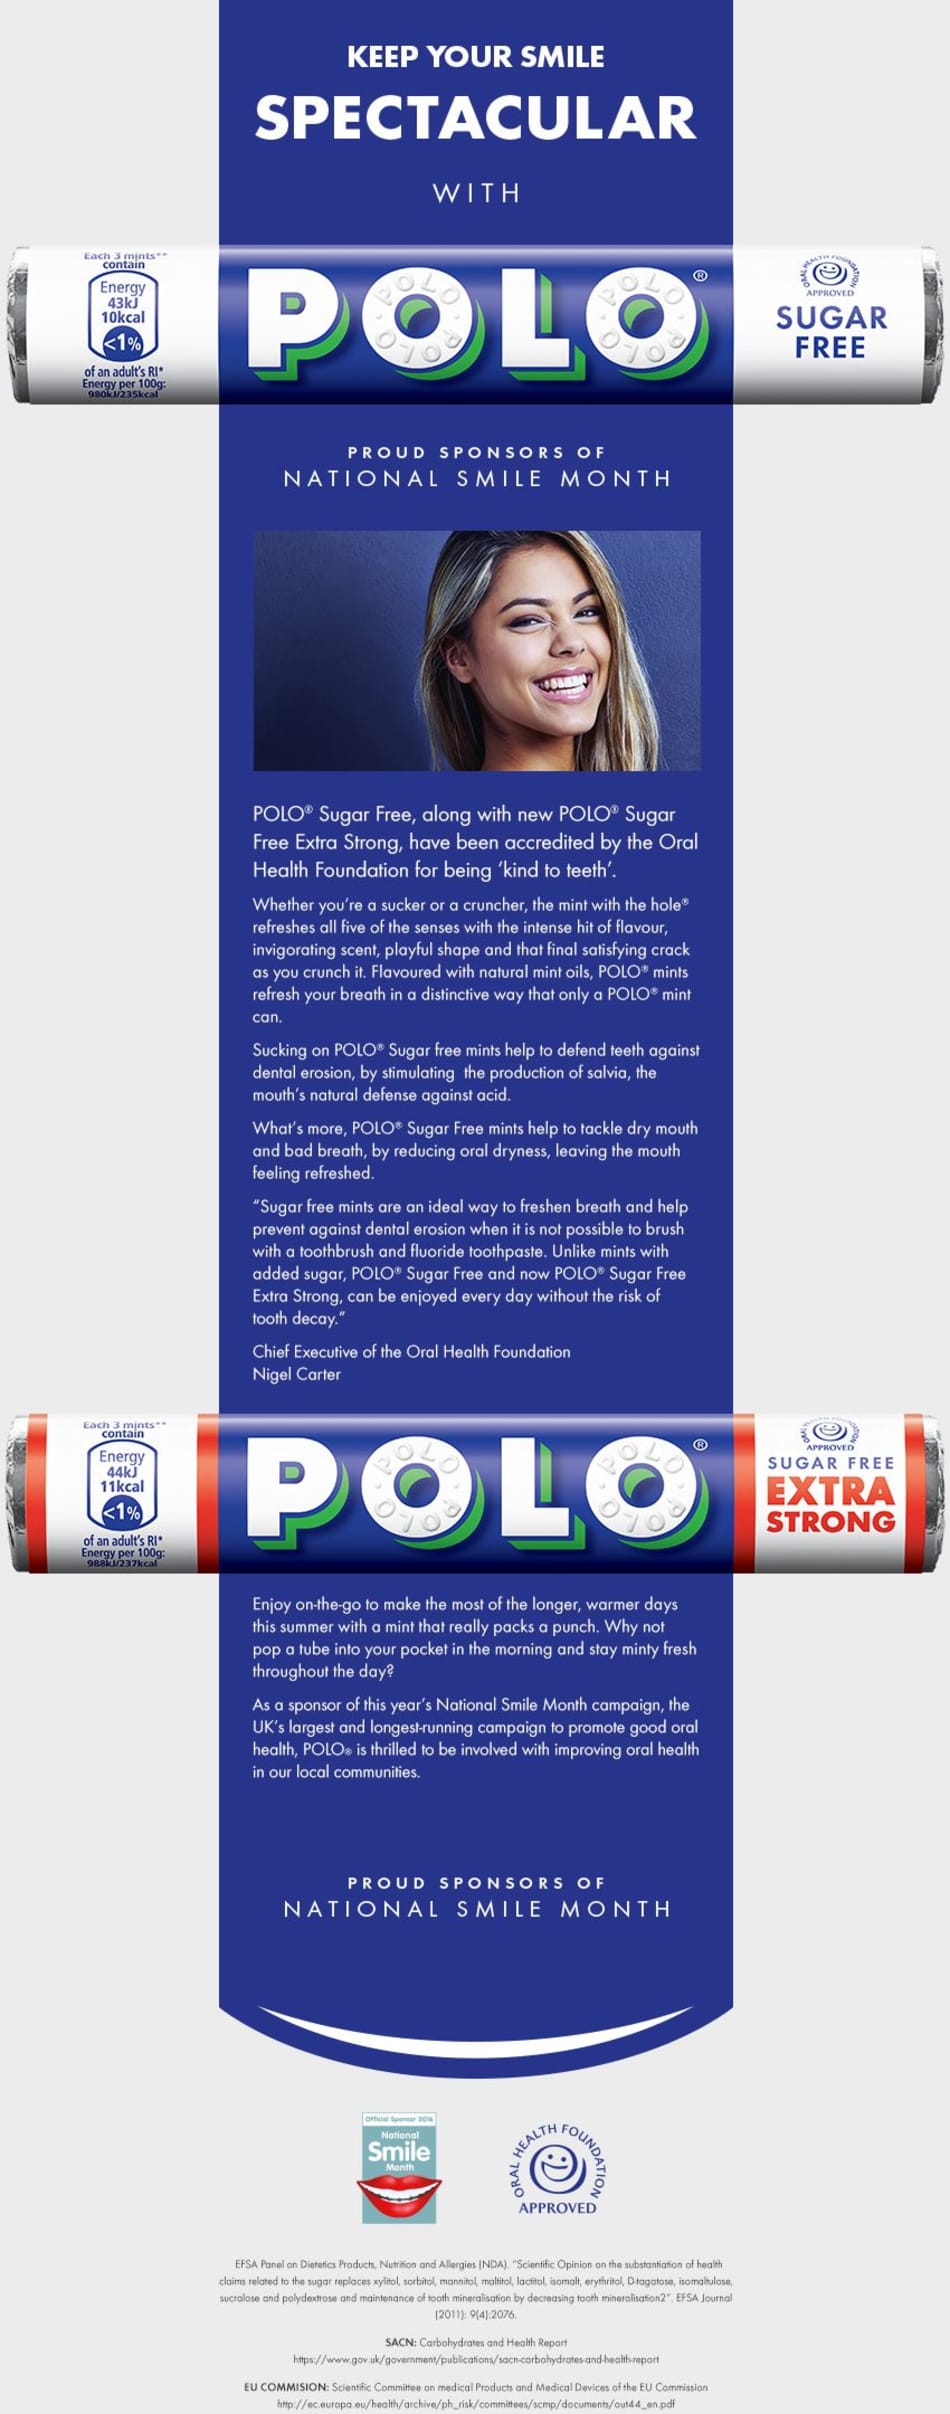 Polo® Sugar Free - Oral Health Foundation